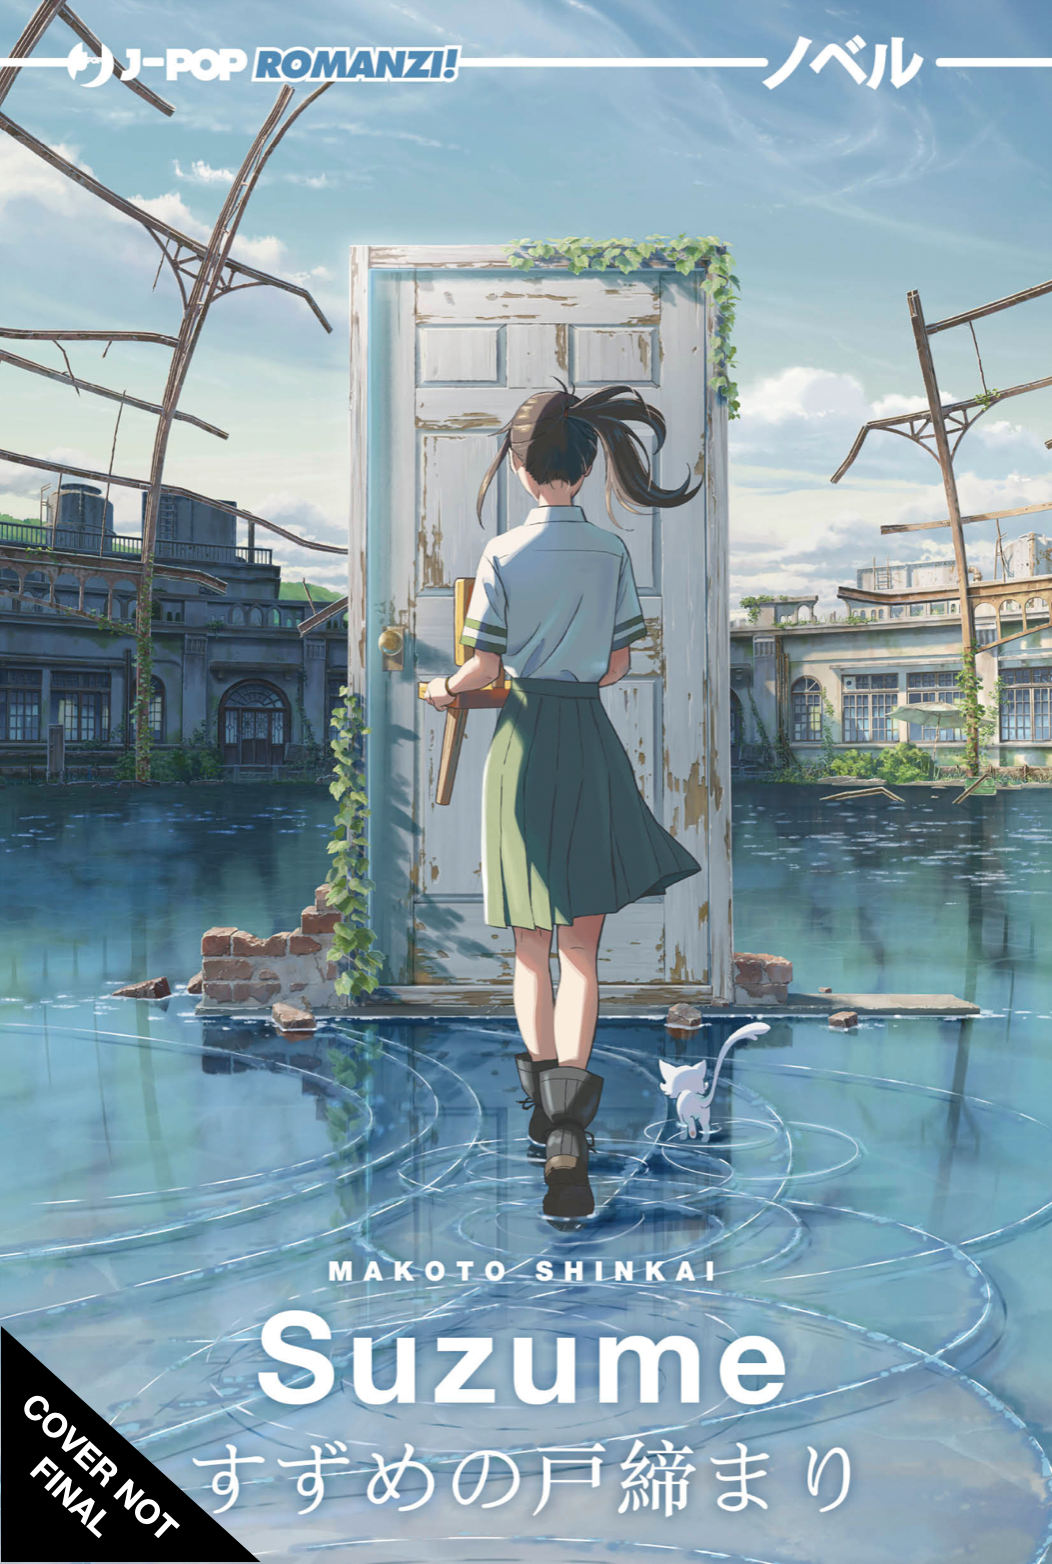 Il Romanzo “Suzume” di Makoto Shinkai